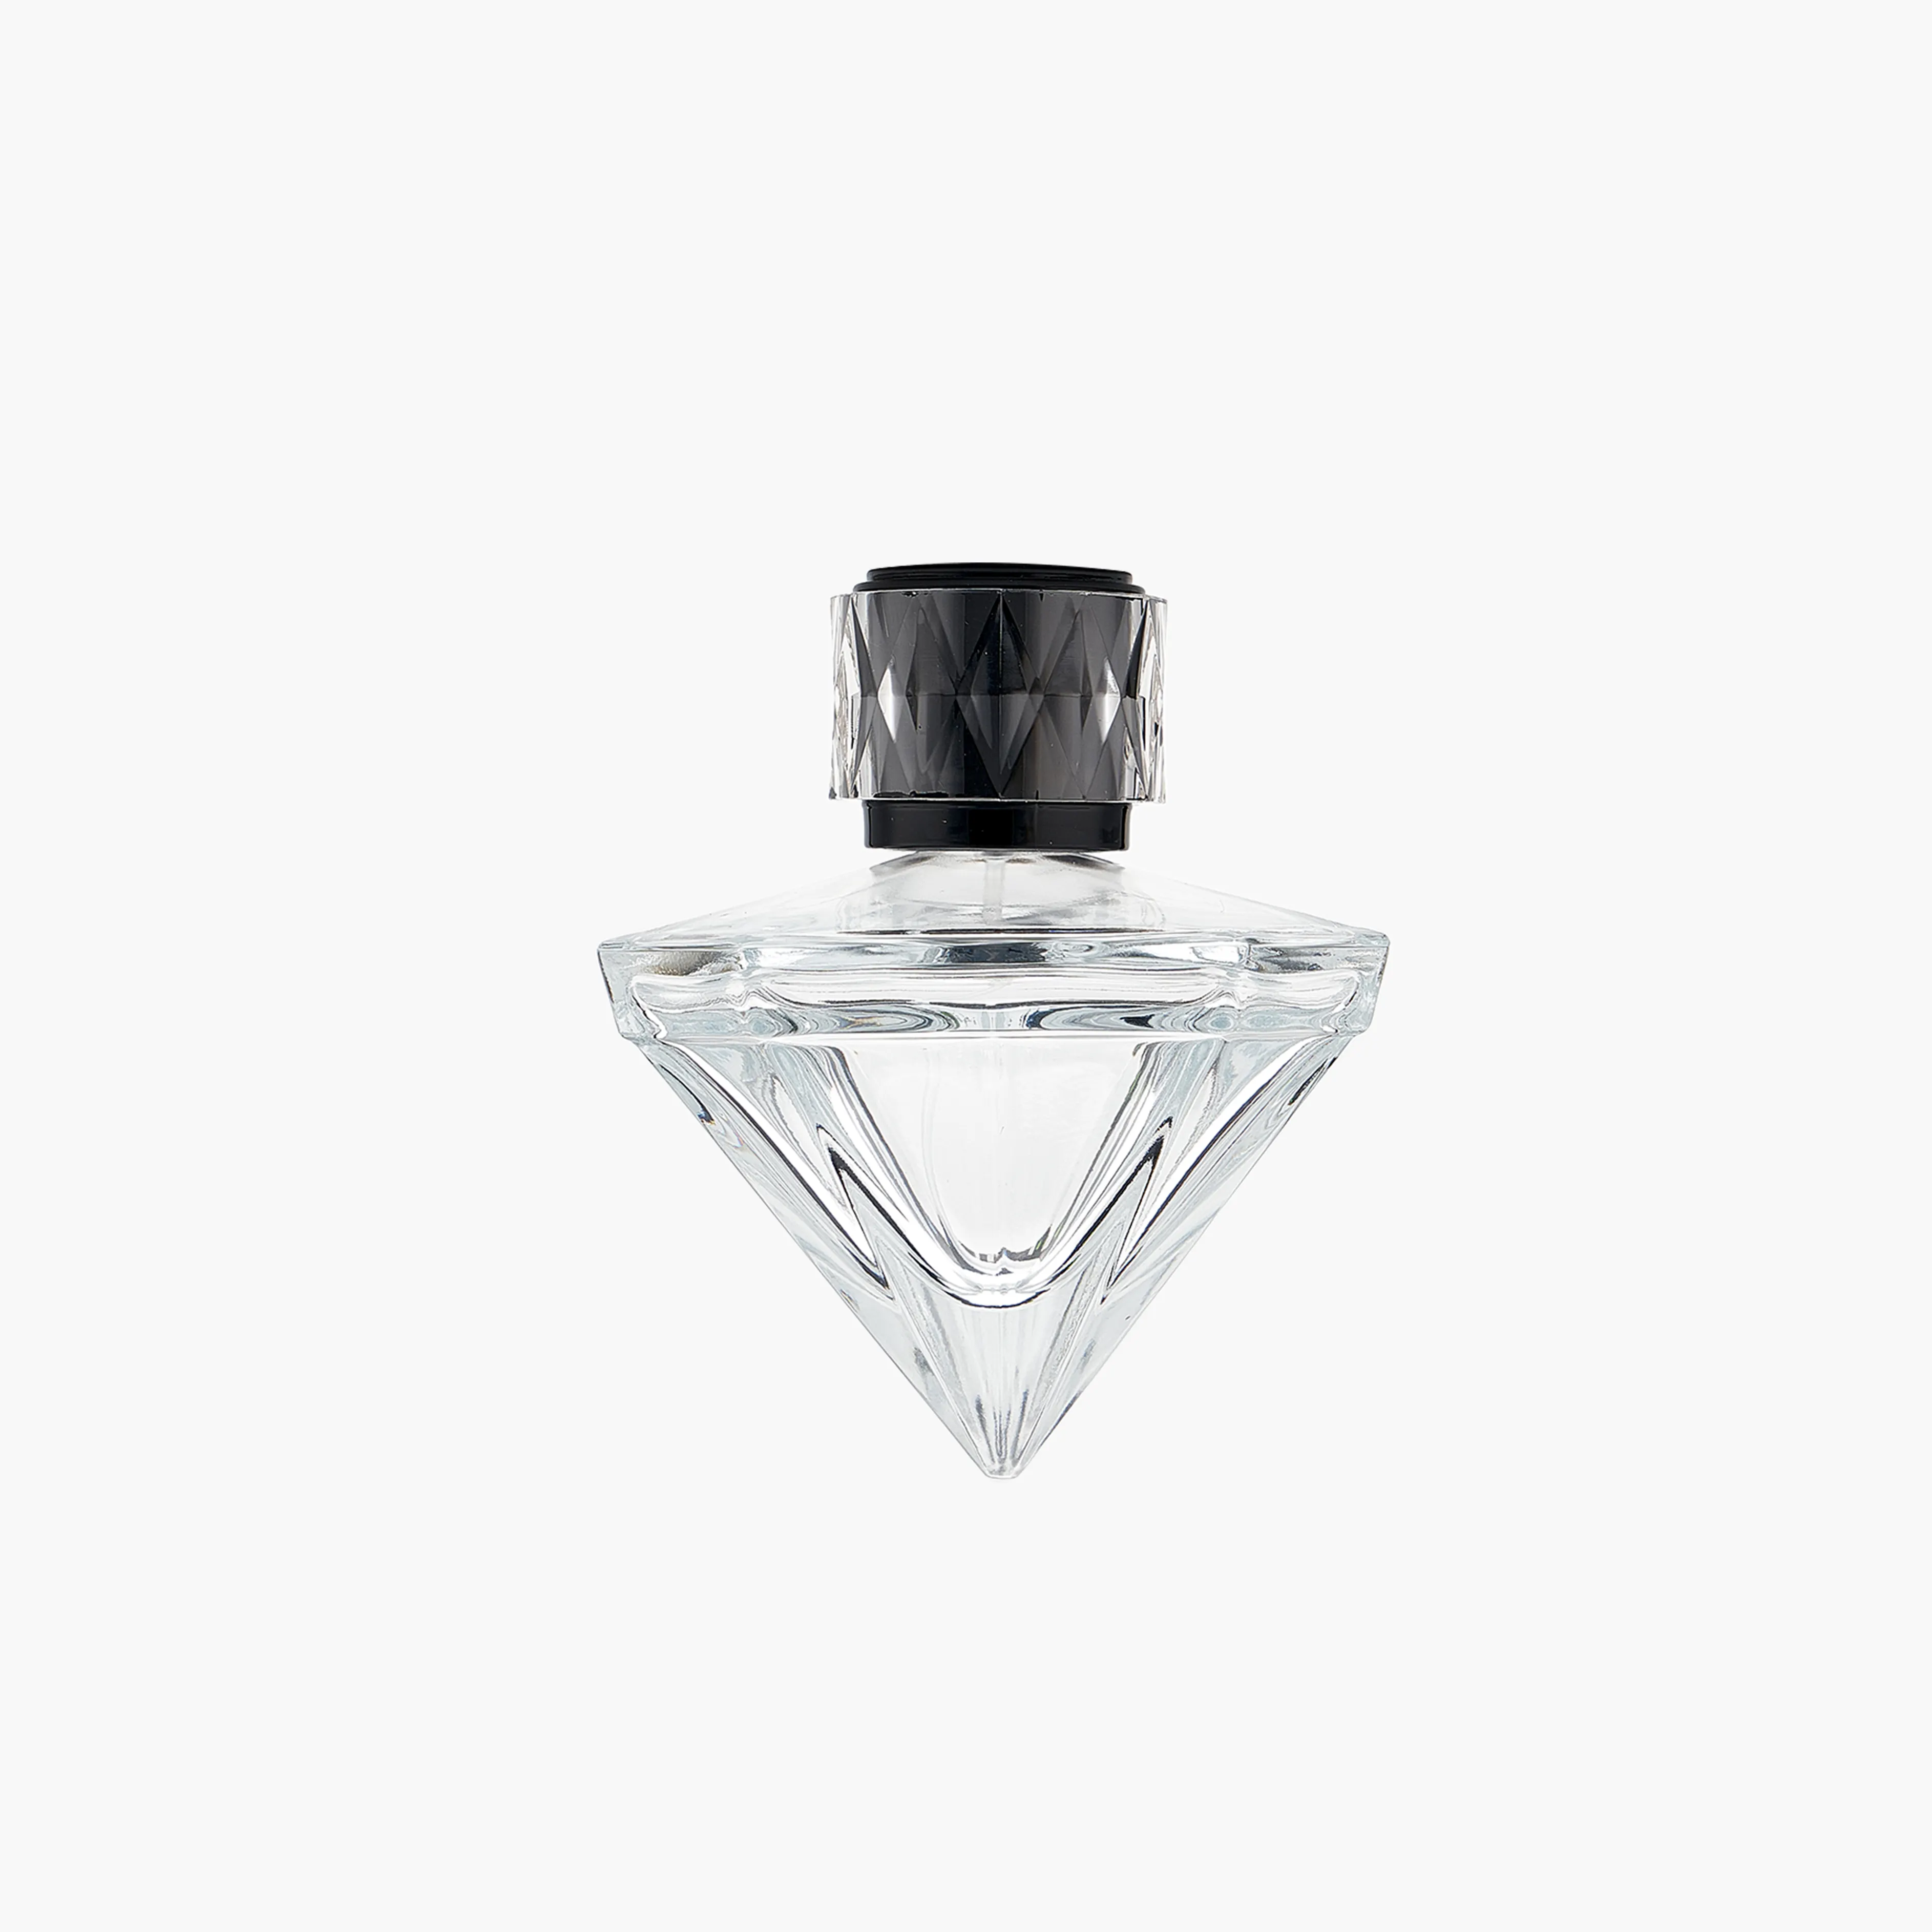 Botella de Perfume de Cristal en Aerosol, 70ml, Decorativa, a Granel, Elegante, Premium, Forma Única para Mujer